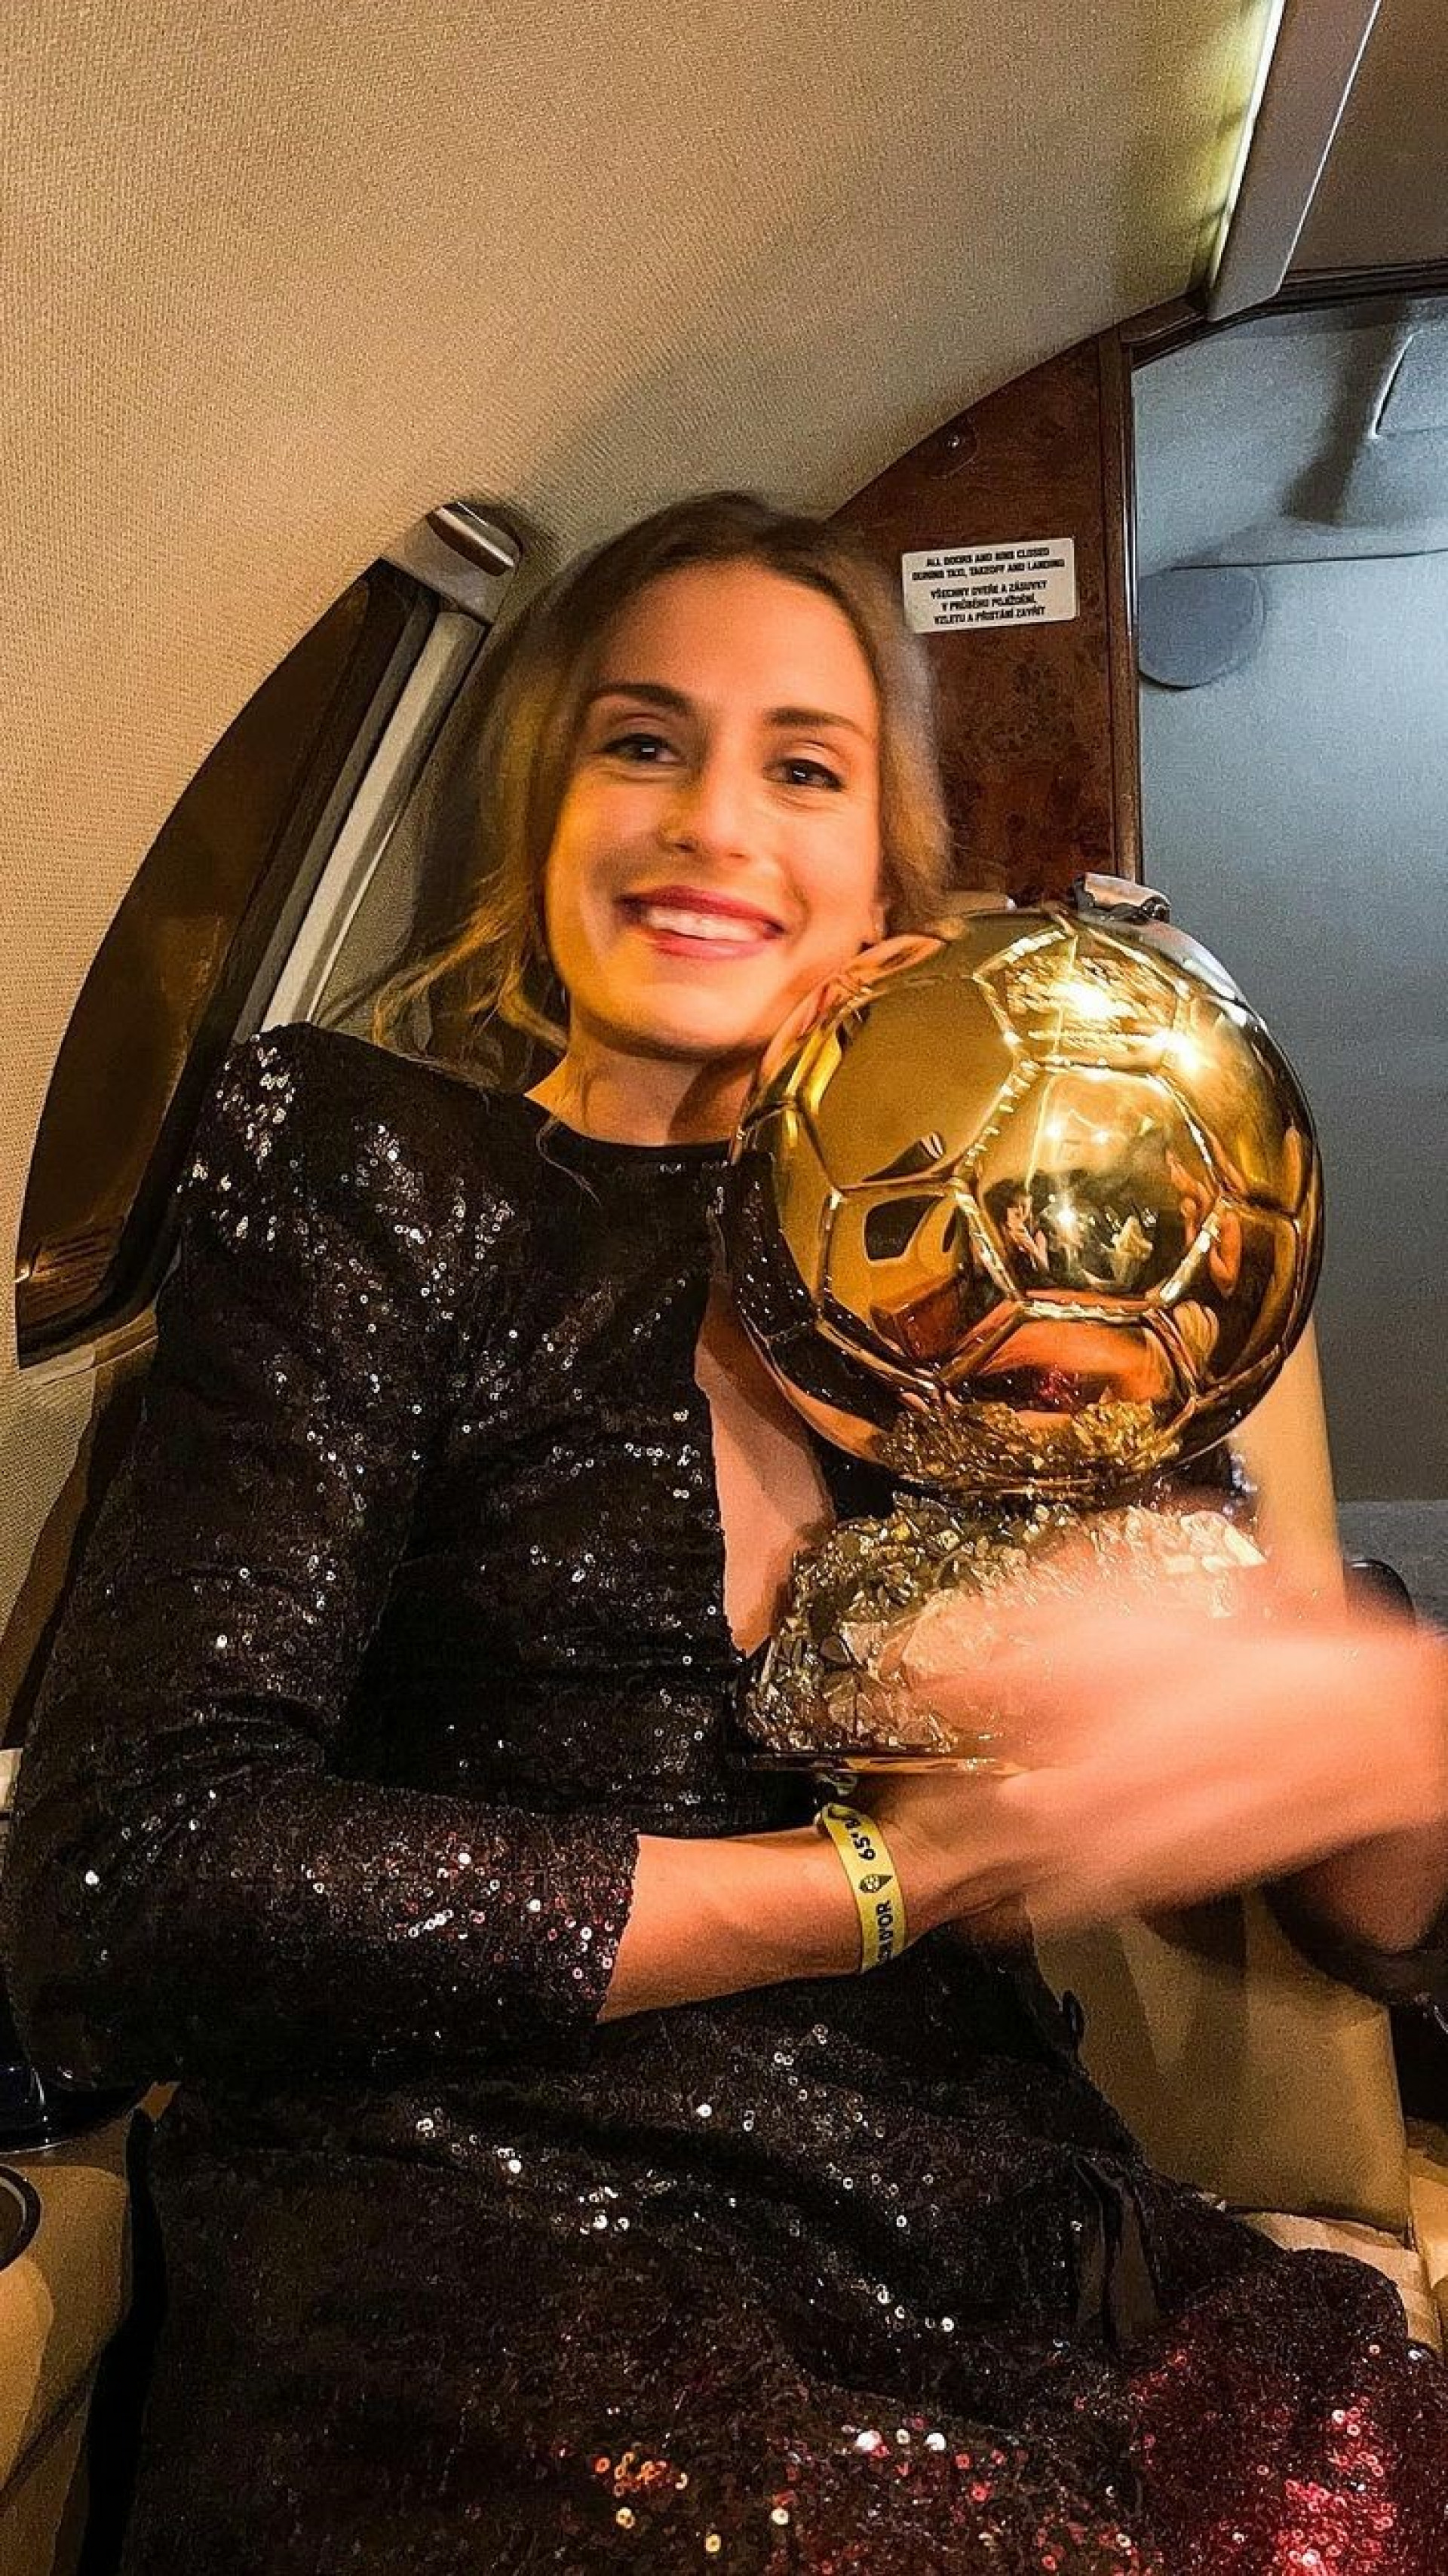 Espanhola Bonmati é eleita Bola de Ouro da Copa do Mundo; veja as premiadas